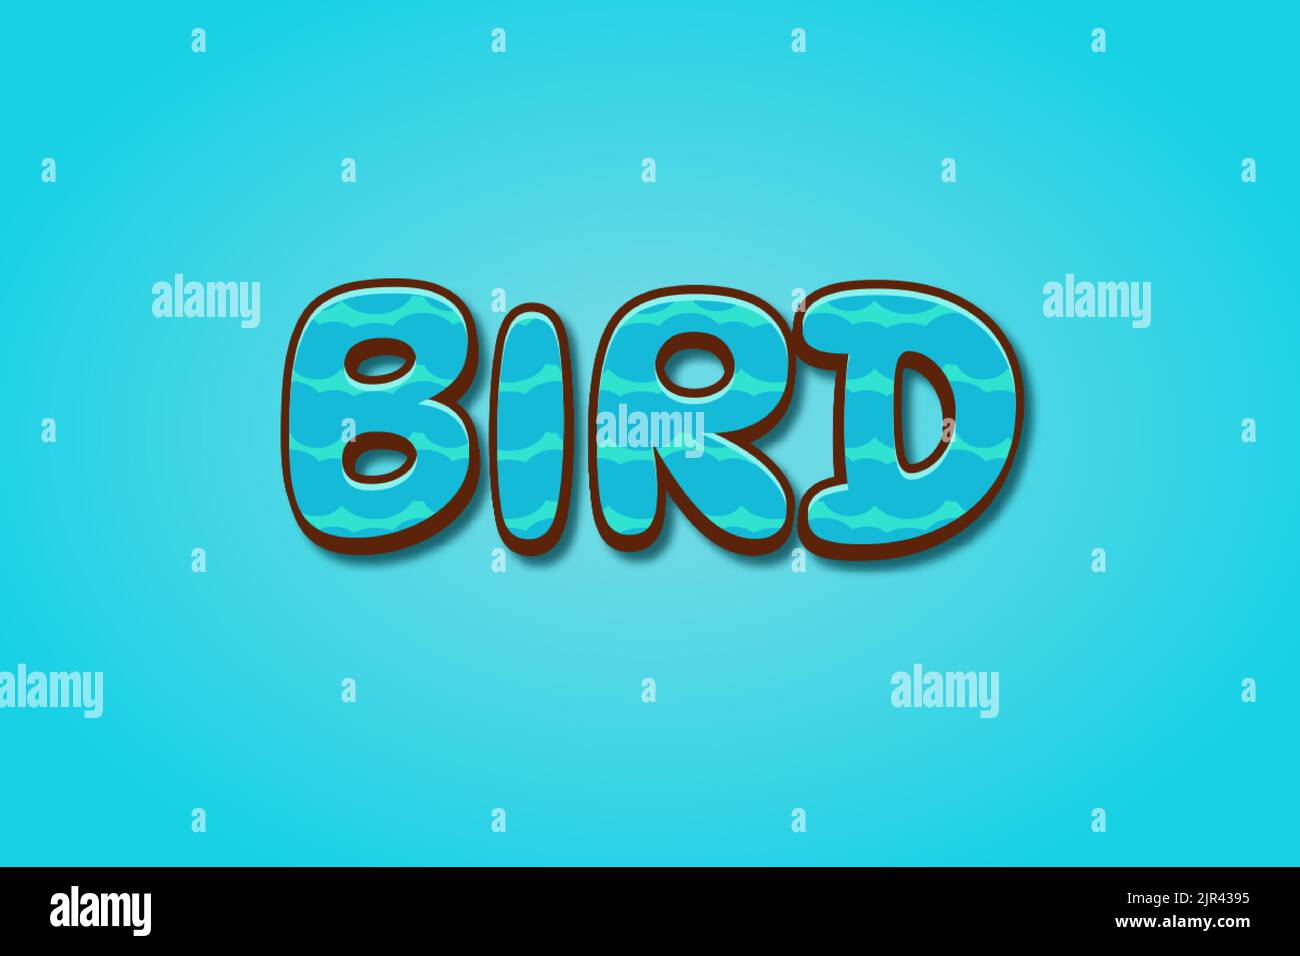 Editierbare Texteffekte Vogel , Wörter und Schriftart können geändert werden Stock Vektor